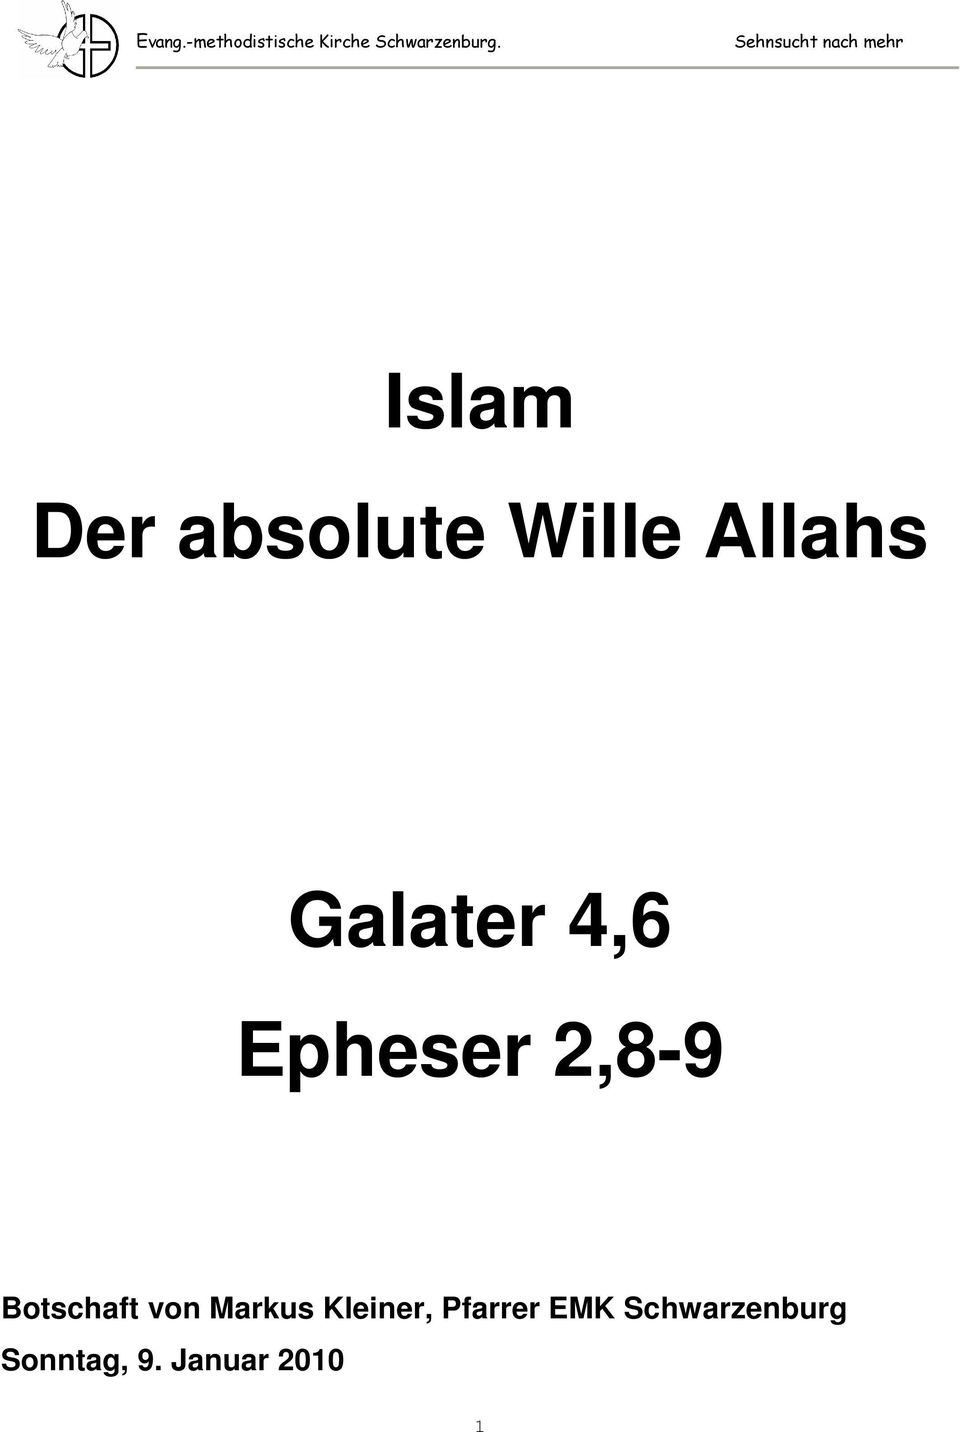 Allahs Galater 4,6 Epheser 2,8-9 Botschaft von